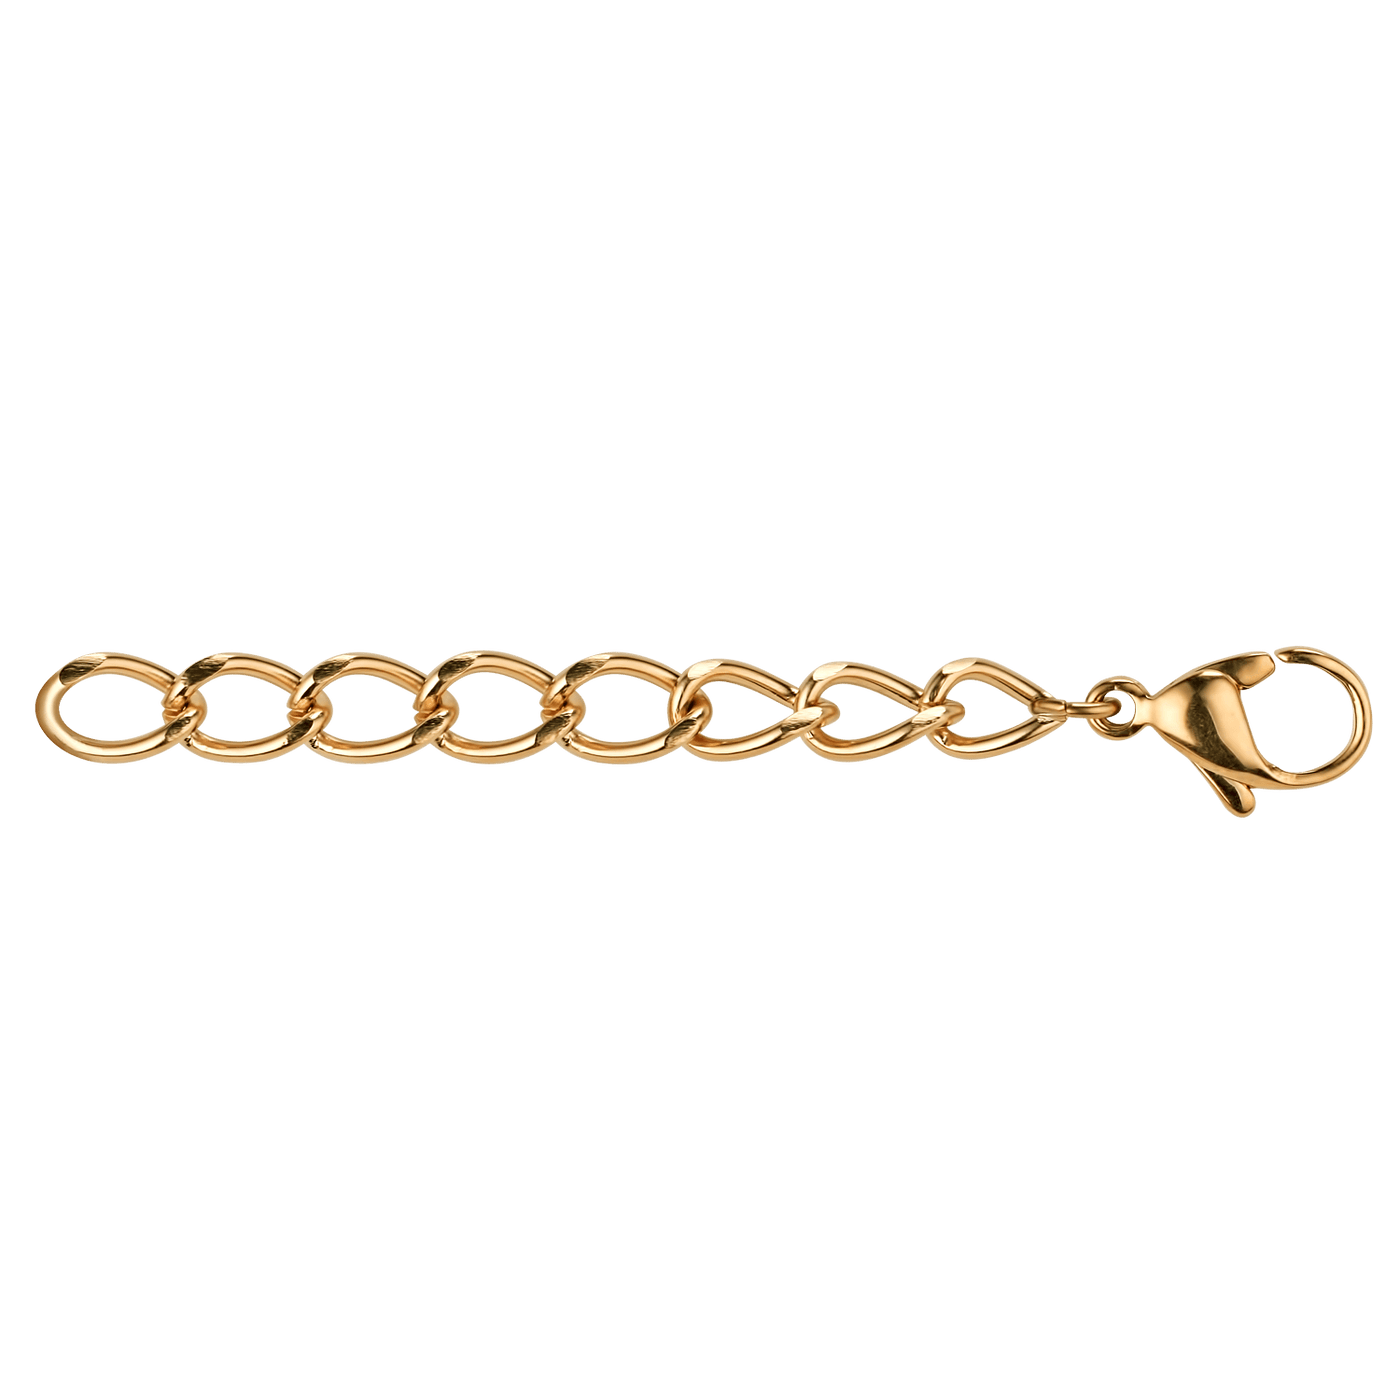 Coeur De Lion Gold Extension Chain with Clasp